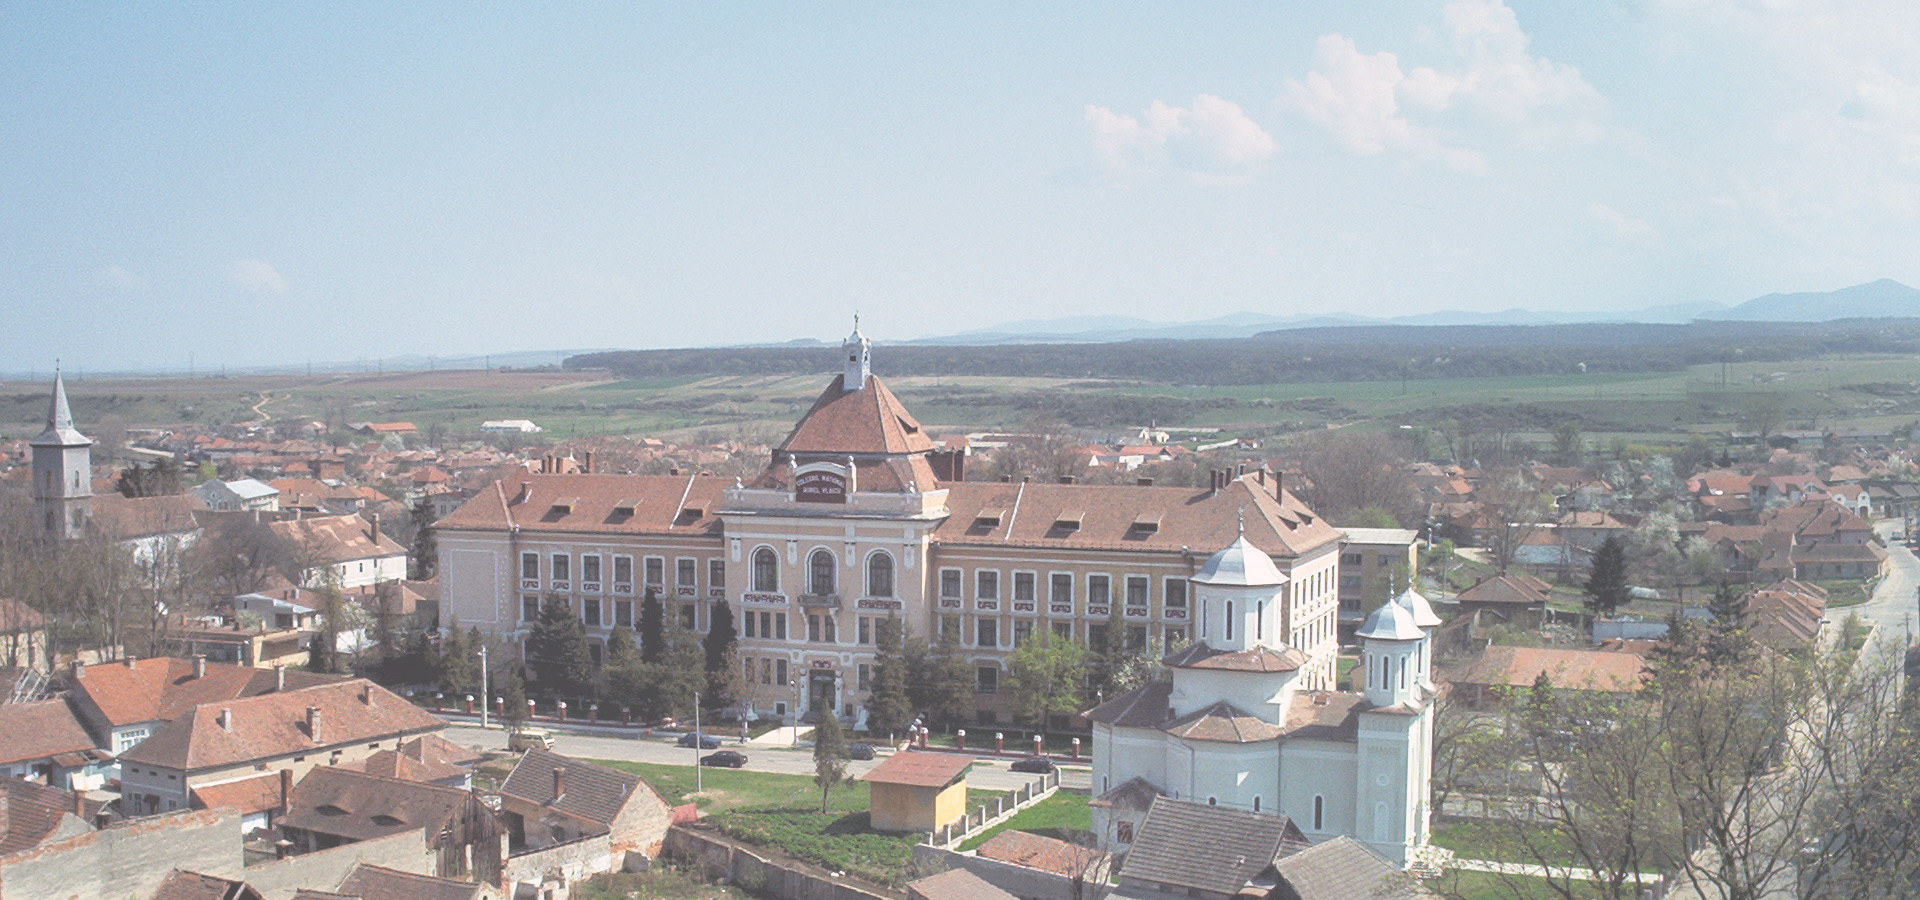 <b>Orăștie, Hunedoara County, Transylvania, Romania</b>